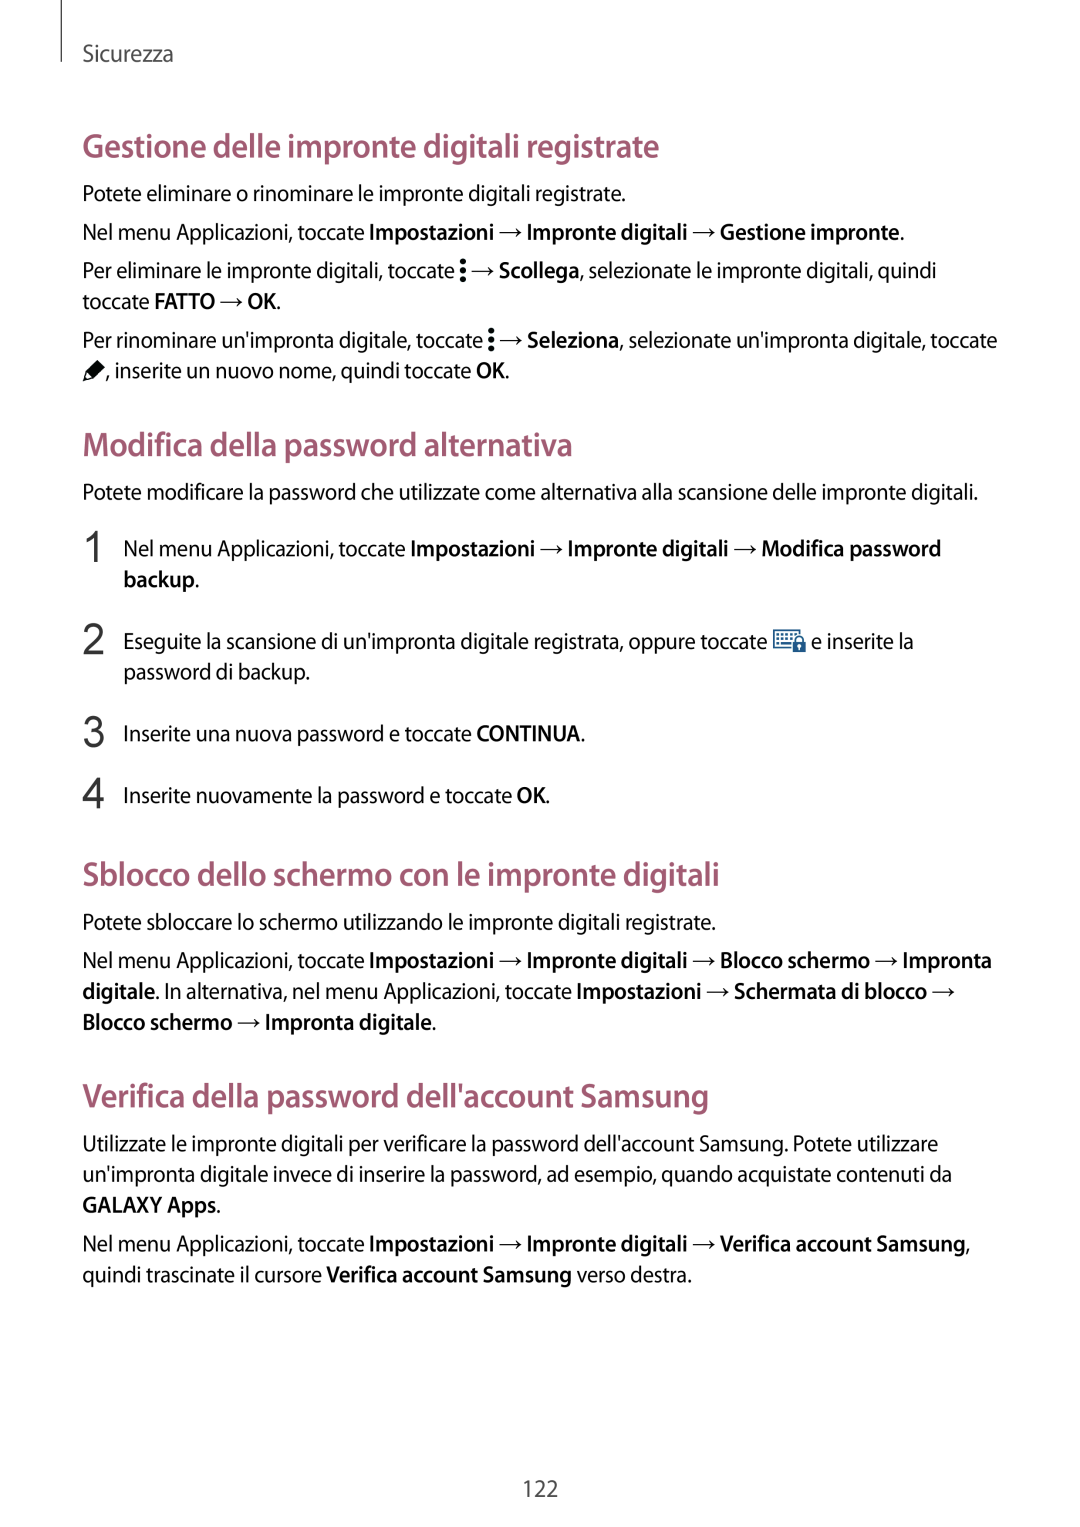 Samsung SM-G900FZDADBT manual Gestione delle impronte digitali registrate, Modifica della password alternativa, Sicurezza 